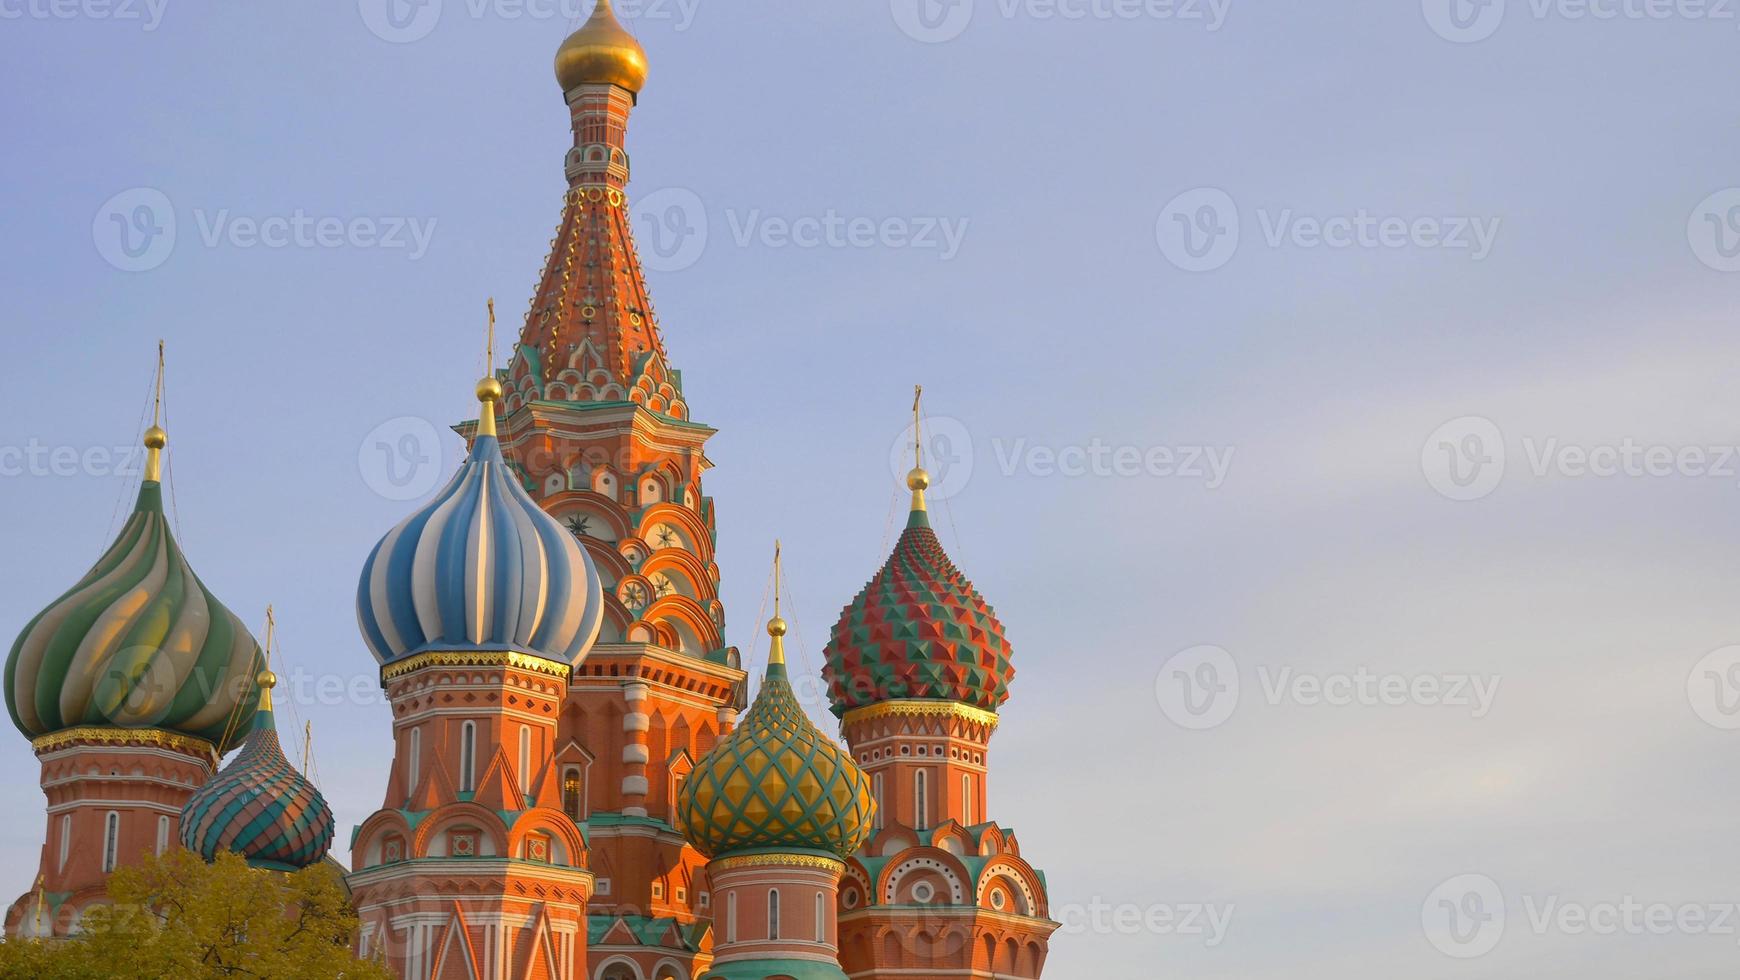 ns. Cattedrale di Basilio in Piazza Rossa Cremlino di Mosca, Russia foto